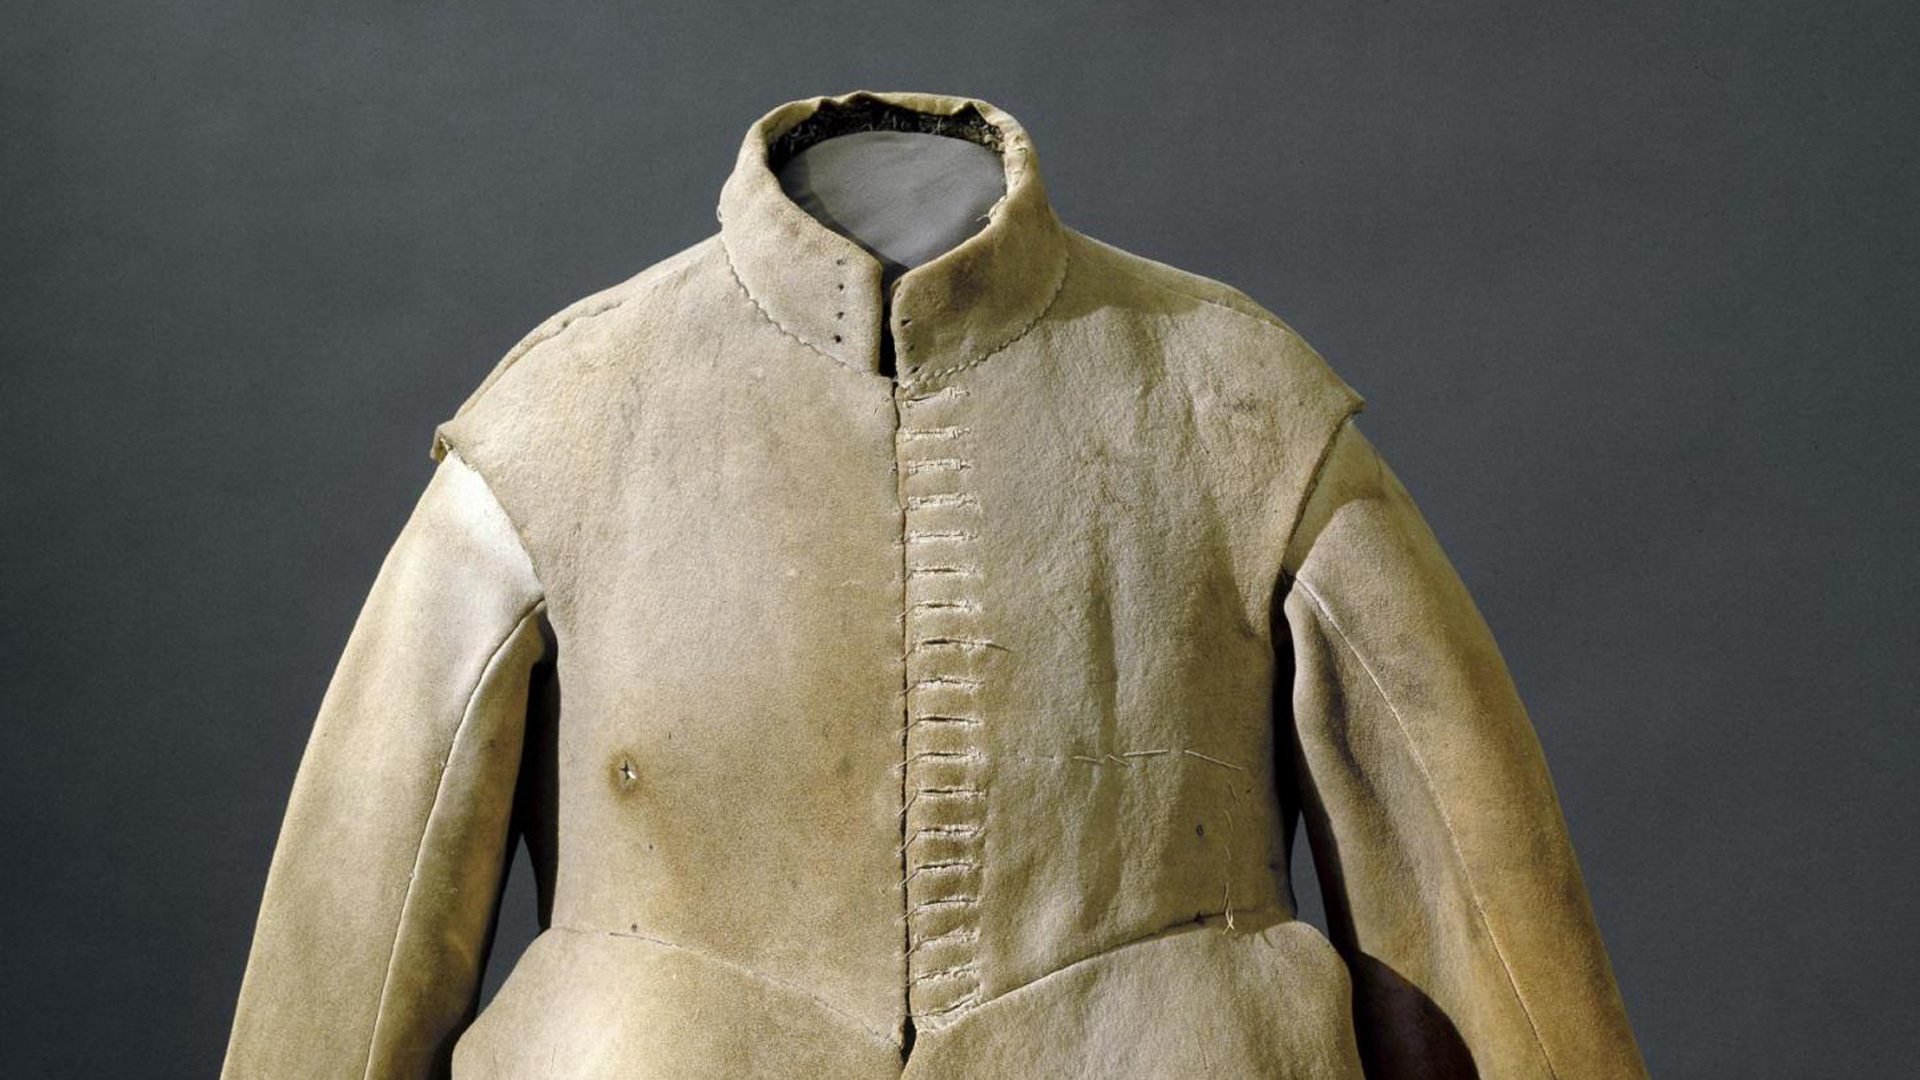 Diesen Mantel soll der schwedisch König Gustav II. Adolf getragen haben, als er im Dreißigjährigen Krieg für die protestantischen Truppen kämpfte und starb. Womöglich durch den Schuss, der auf der rechten Seite ein Loch hinterließ.